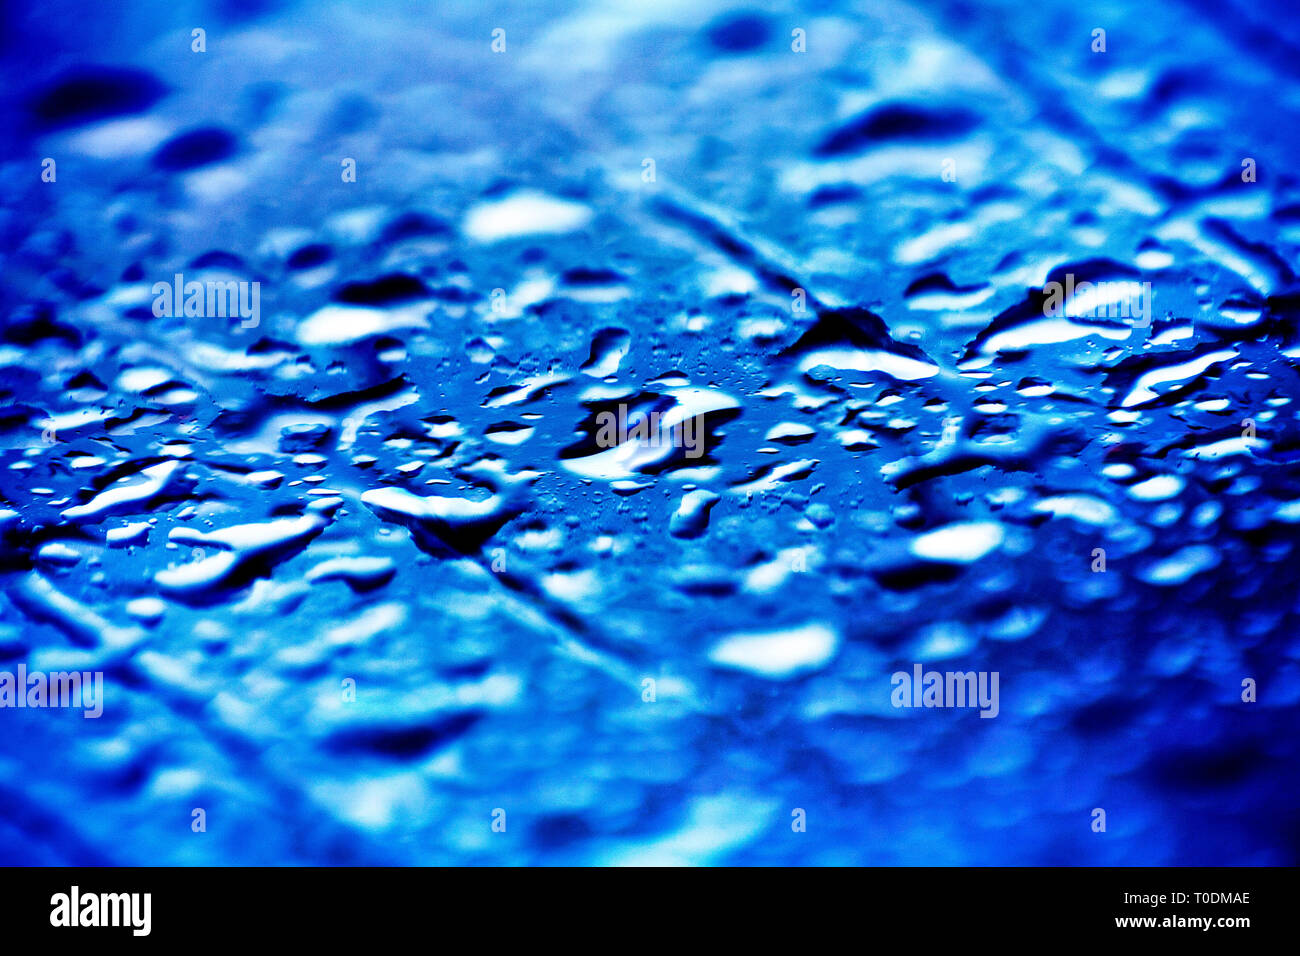 Blau Wassertropfen Makro Hintergrund hohe Qualität, flüssige Tropfen, Winter schießen, gedreht mit Canon EOS 5D, Dorstewallpaper in Photoshop CS 6 erstellt haben. Stockfoto